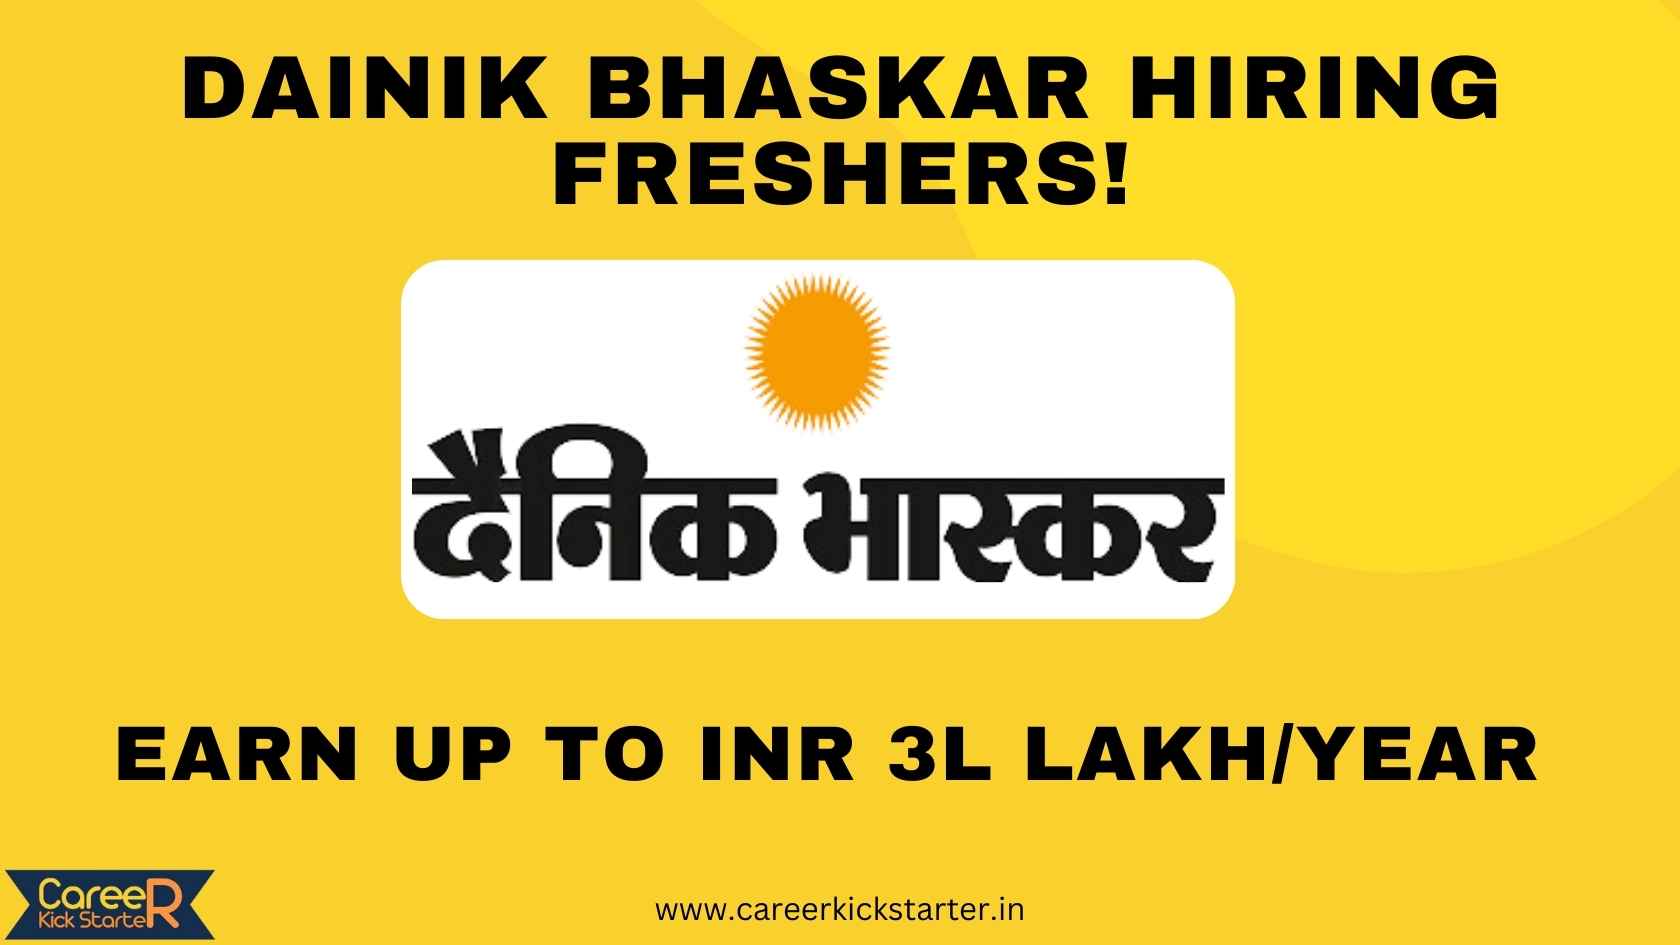 Dainik Bhaskar Hiring Freshers